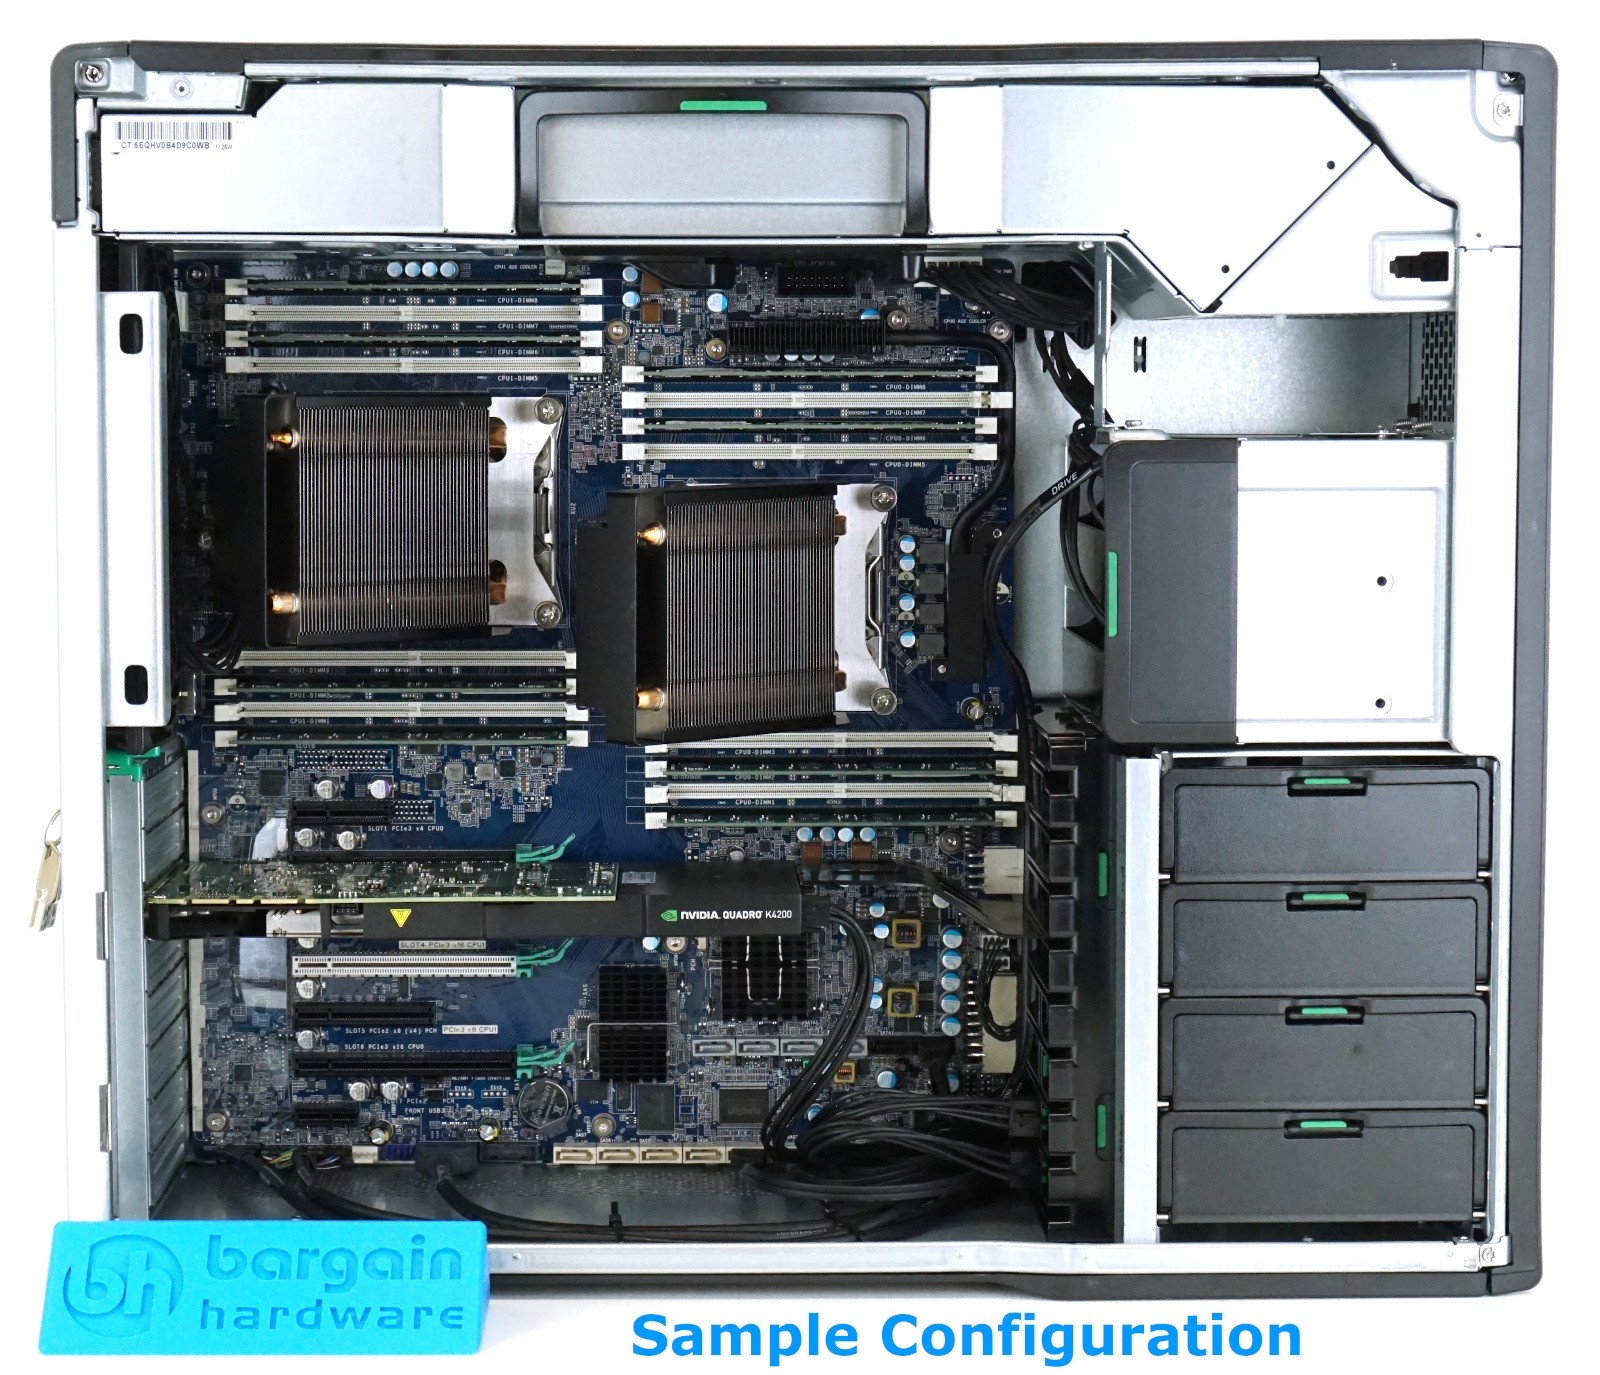 Intermedio mucho Desconexión HP Z840 Workstation | Configure-to-Order